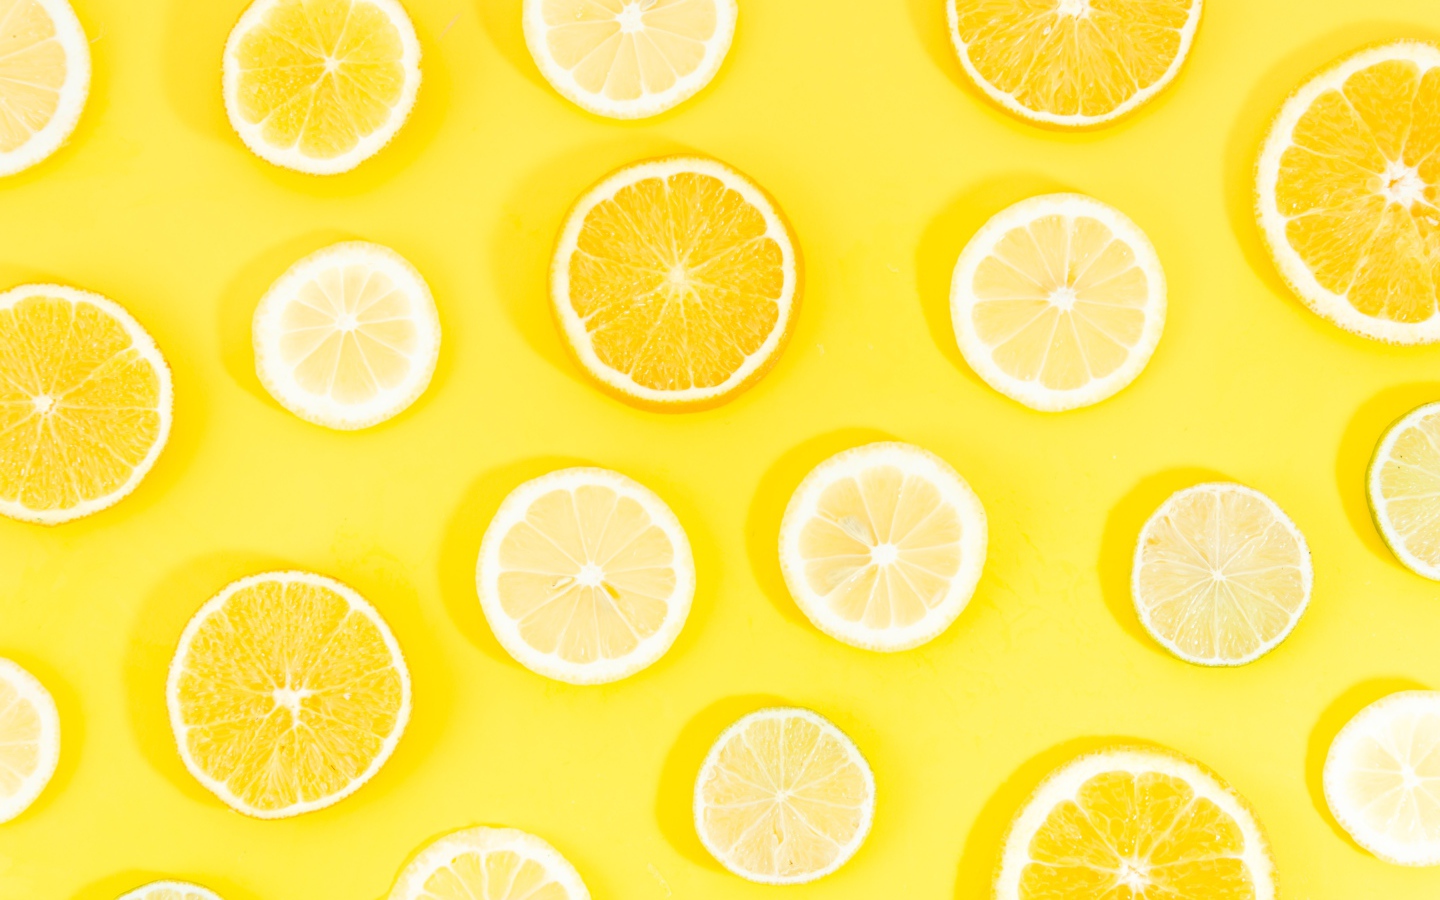 Кружочки апельсина и лимона на желтом фоне